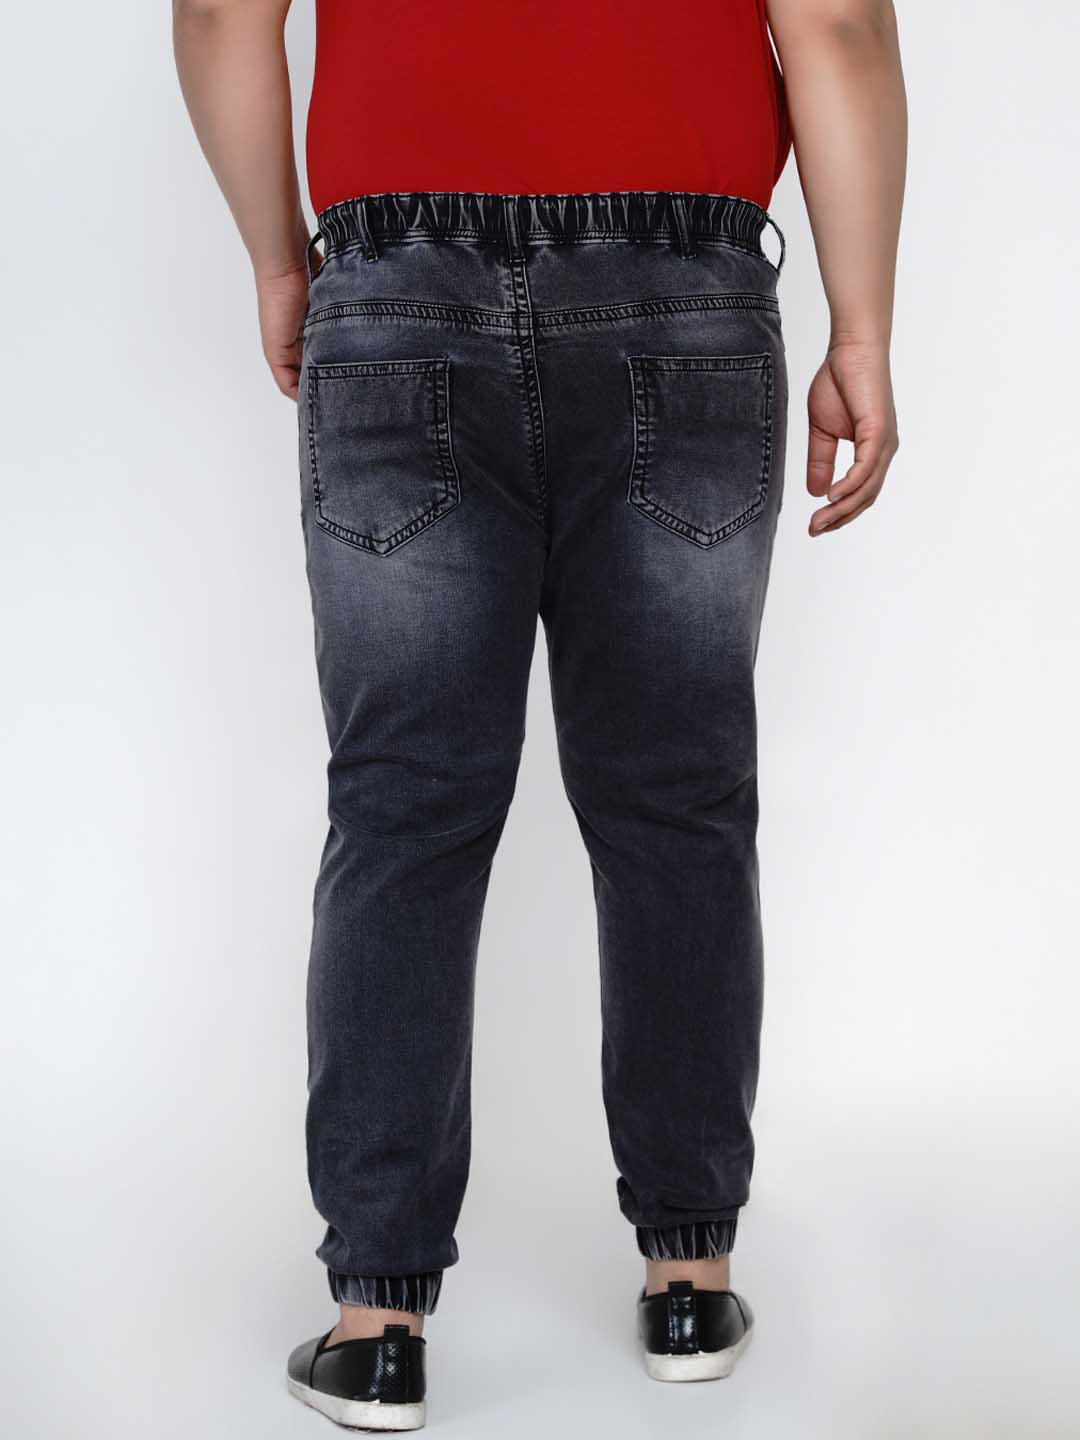 bottomwear/jeans/JPJ12135/jpj12135-4.jpg